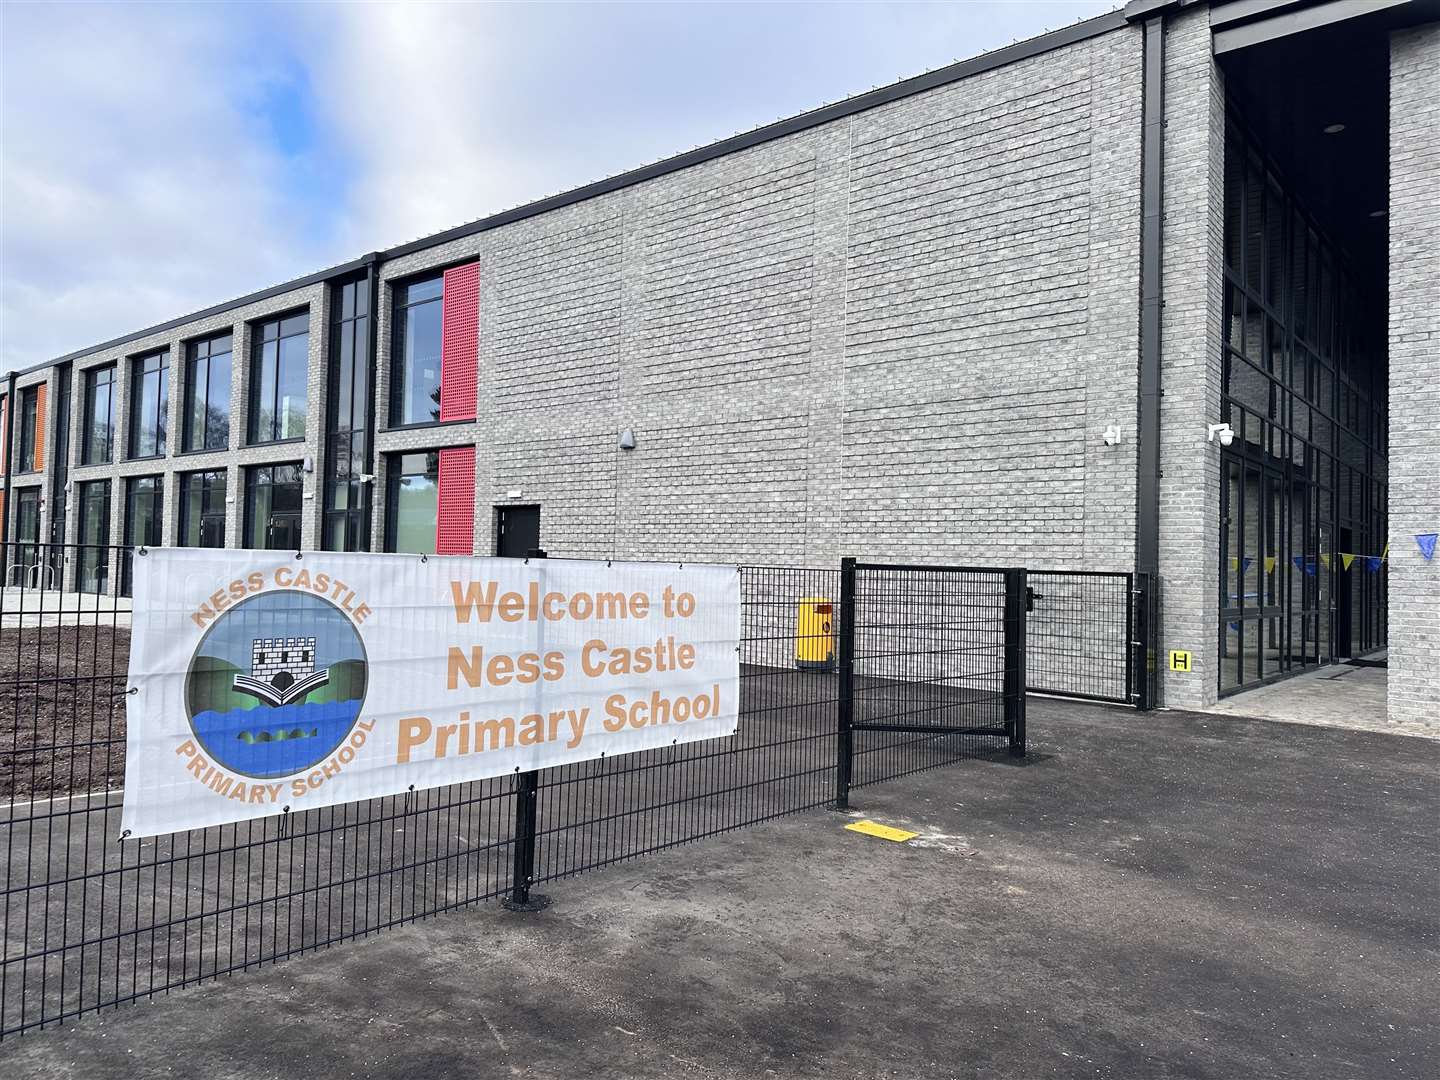 Ness Castle Primary School.